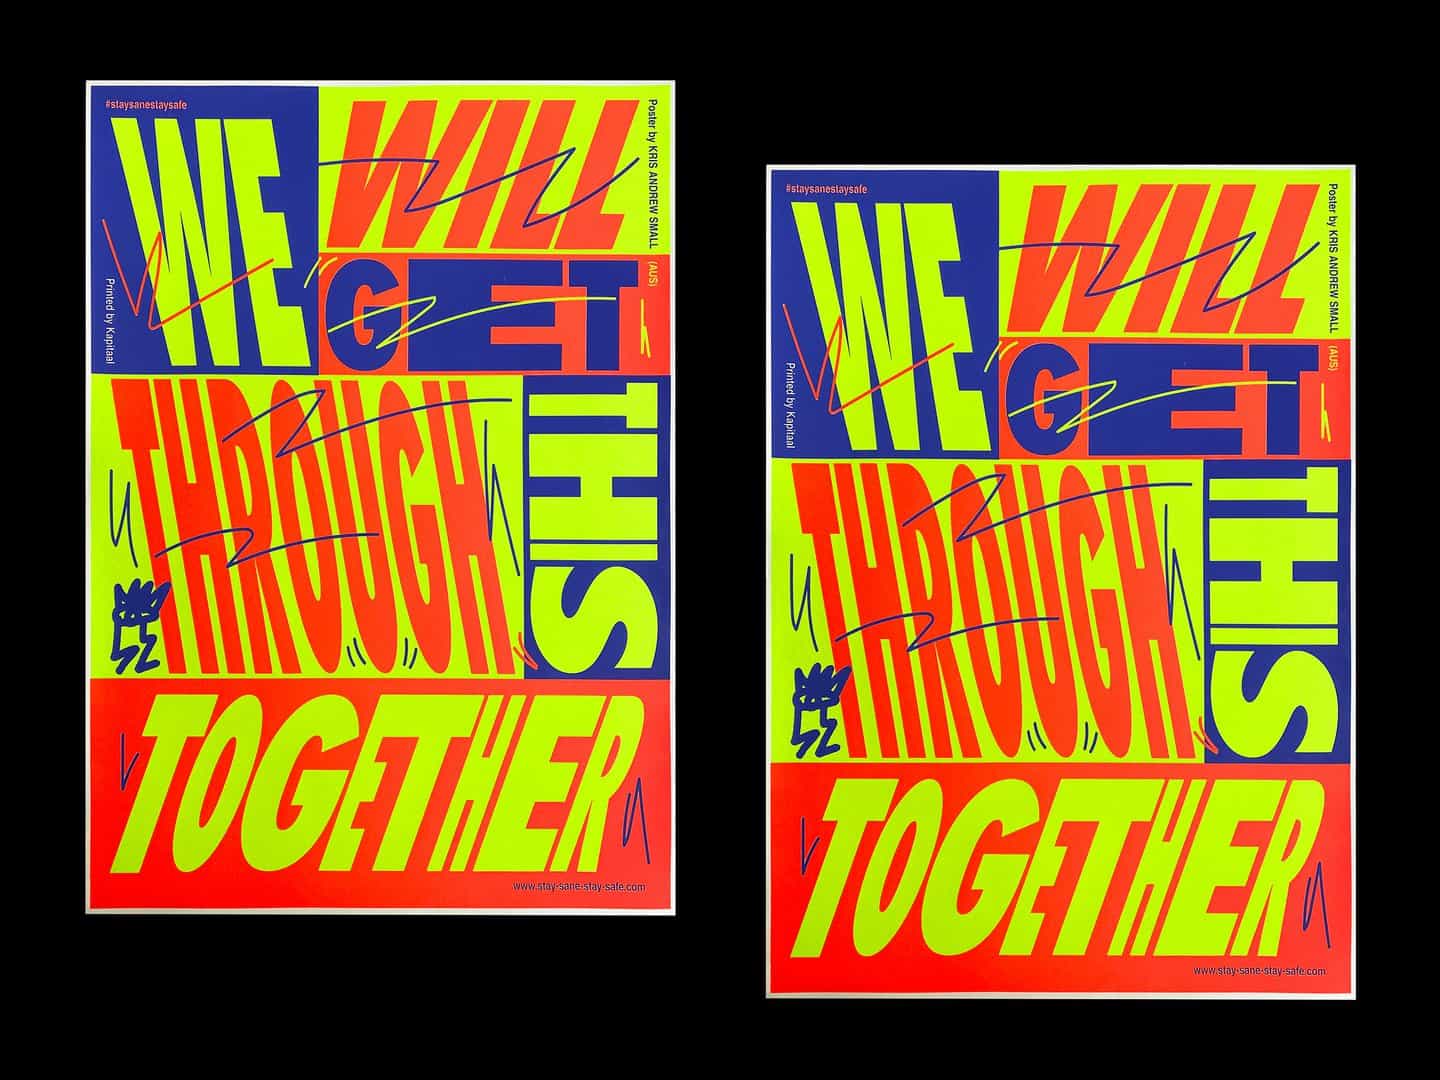 Ejemplos del trabajo de Kris hasta la fecha: Podemos superar esto juntos. Impreso por Kapitaal, Países Bajos, 2020 (Copyright © Kris Andrew Small, 2020)